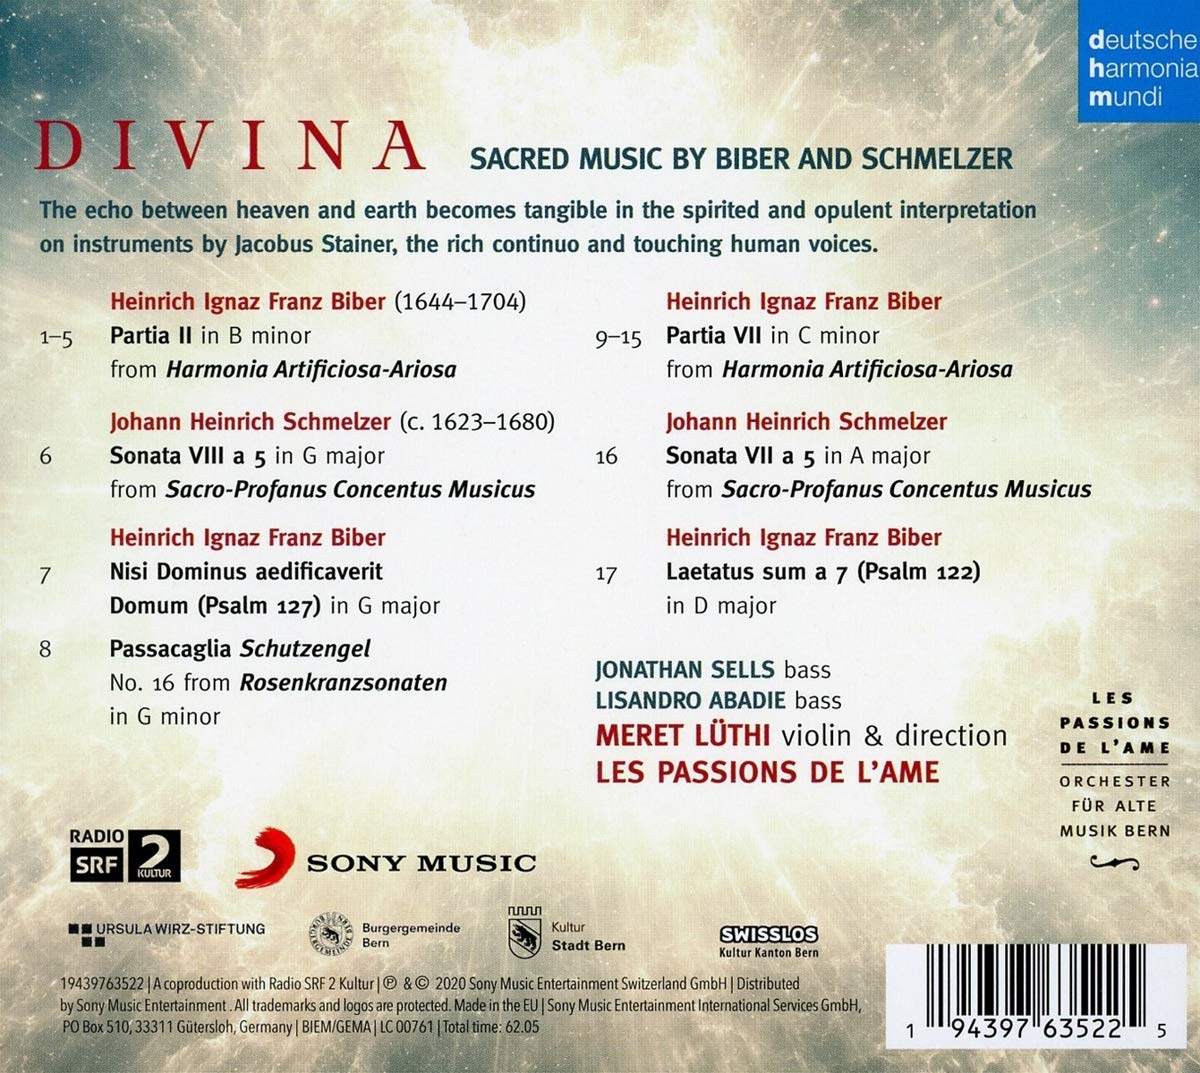 Les Passions de l'Ame 푹스 / 슈멜처: 종교음악 (Divina - Sacred Music by Biber & Schmelzer)